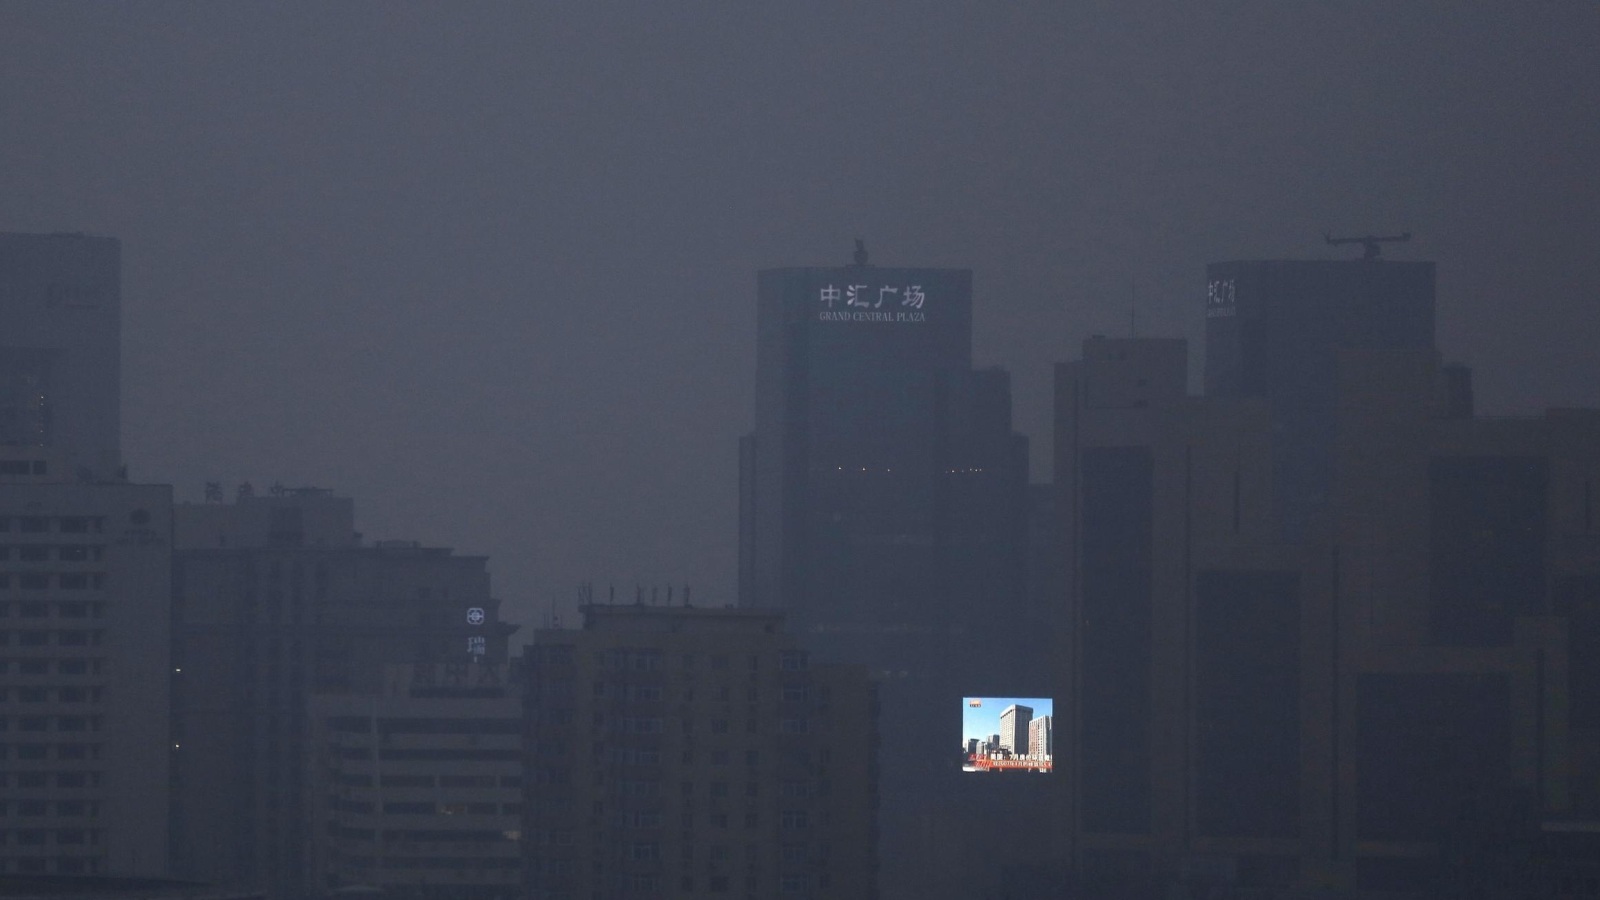 ‪صورة قاتمة لمدينة بكين تظهر حجم العتمة في المدينة بسبب تلوث الجو‬ (الأوروبية)